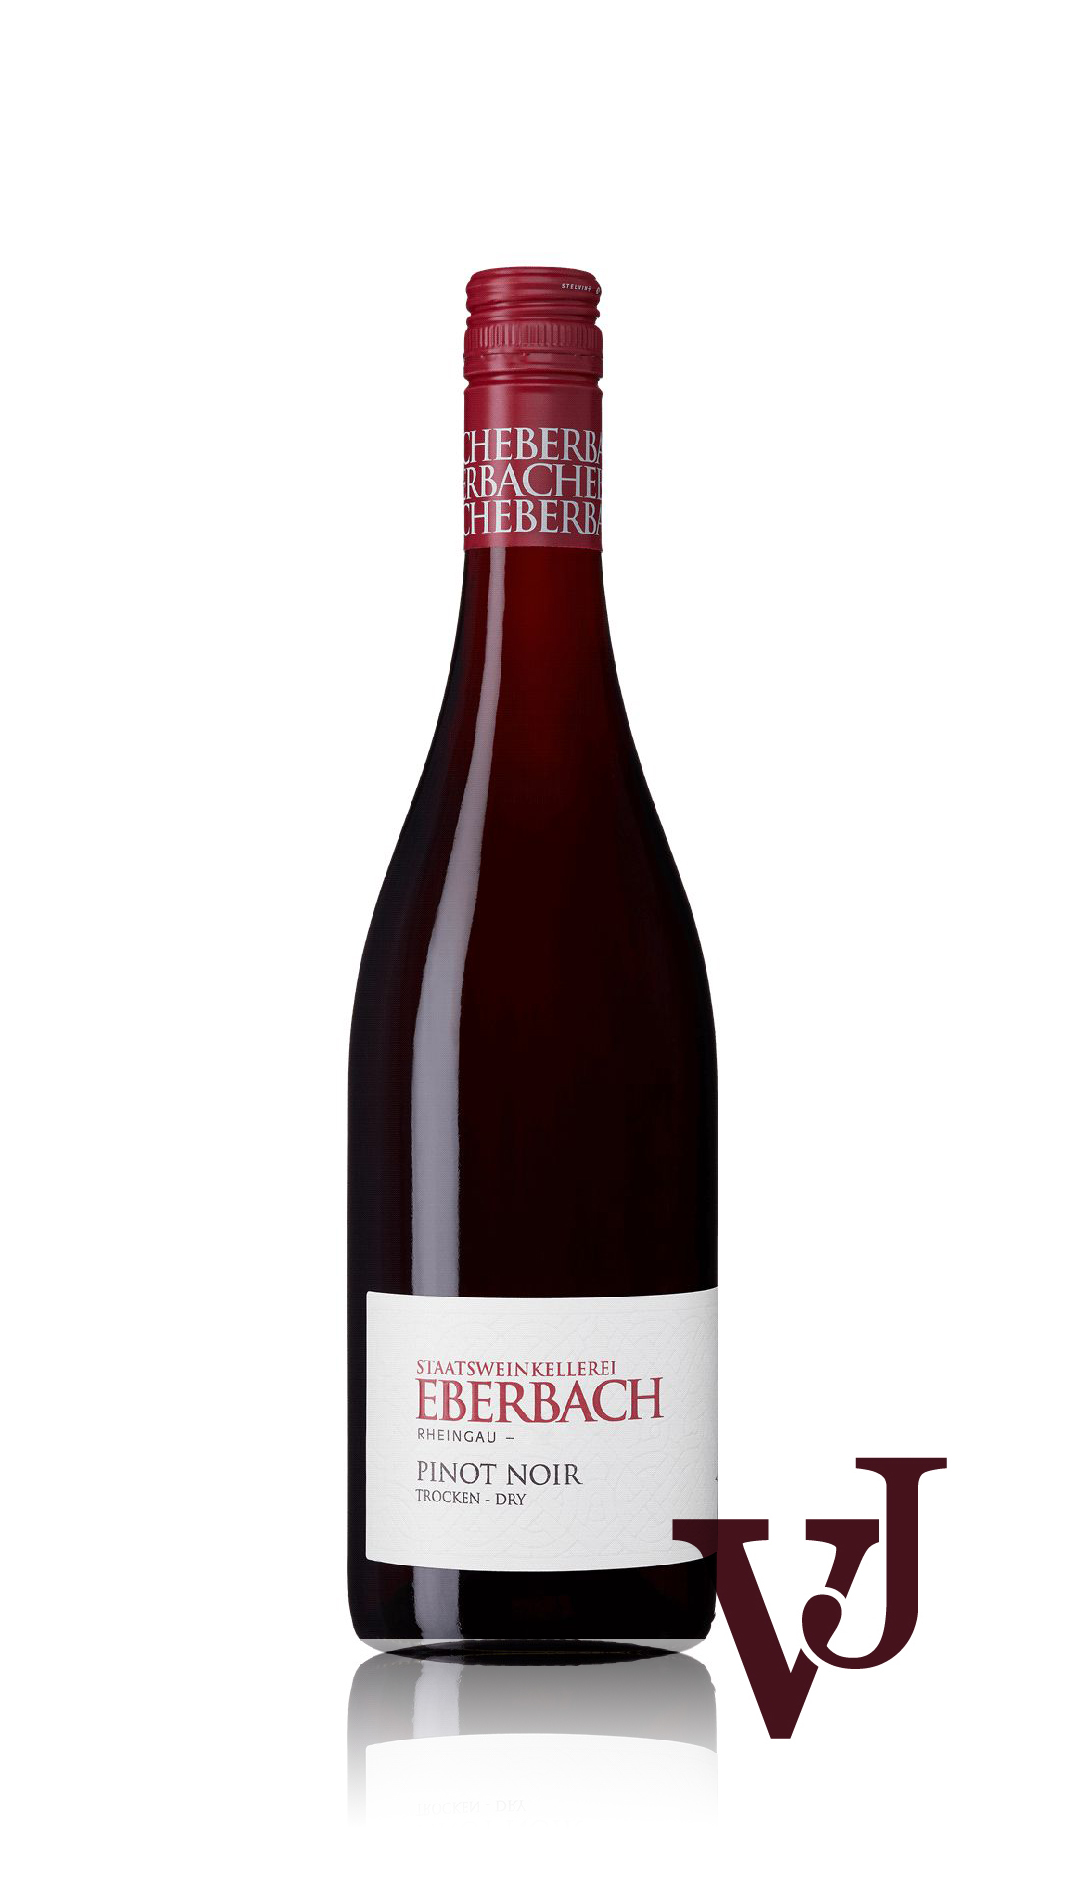 Rött Vin - Kloster Eberbach Pinot Noir Trocken artikel nummer 5066001 från producenten Kloster Eberbach från området Tyskland